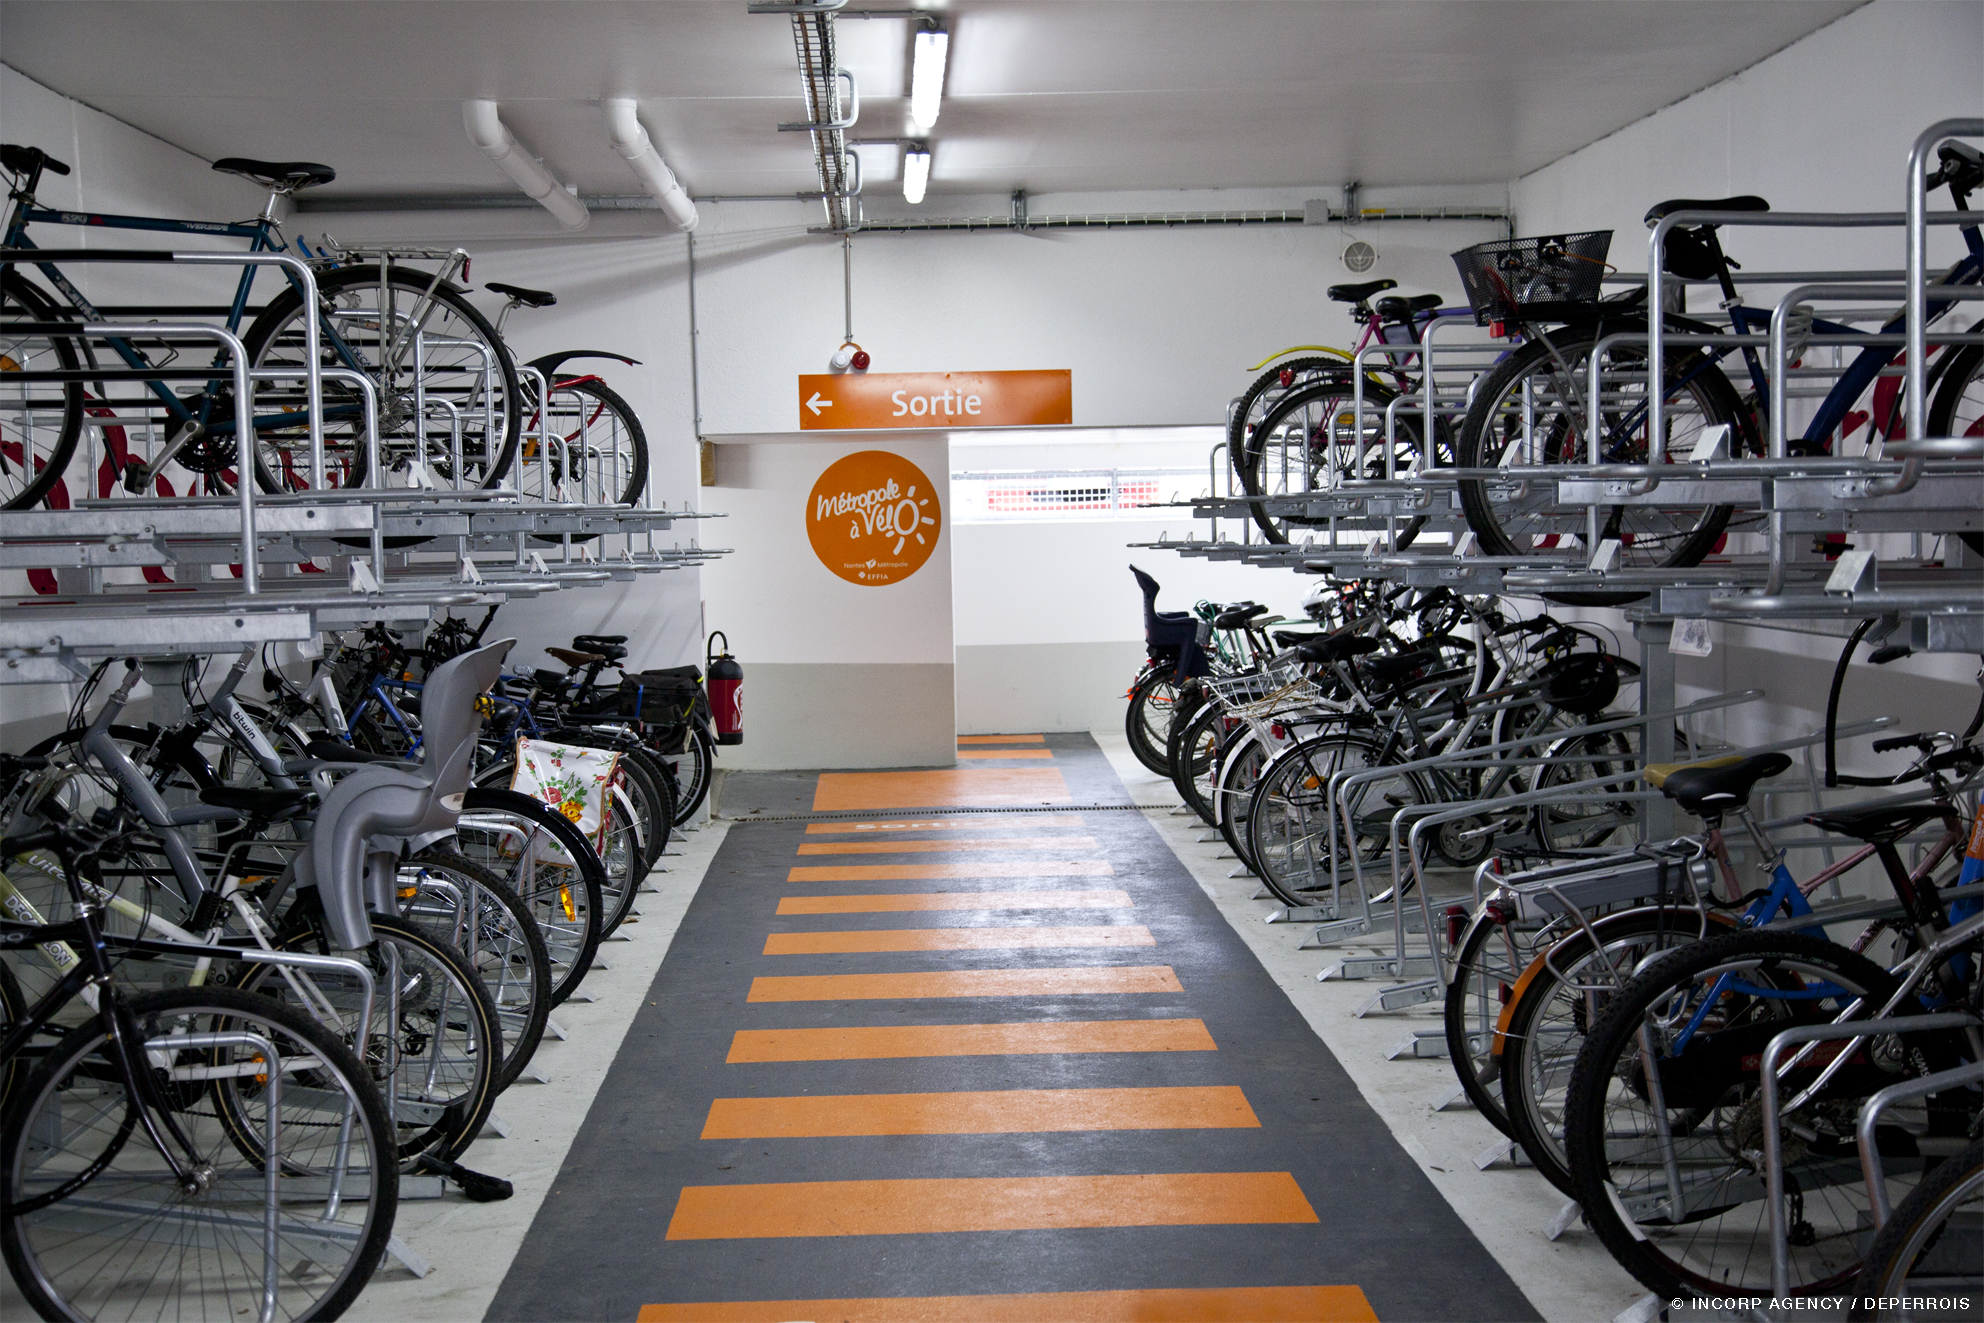 Parking à vélo pour entreprise : où l'aménager ? - Paris Entreprises